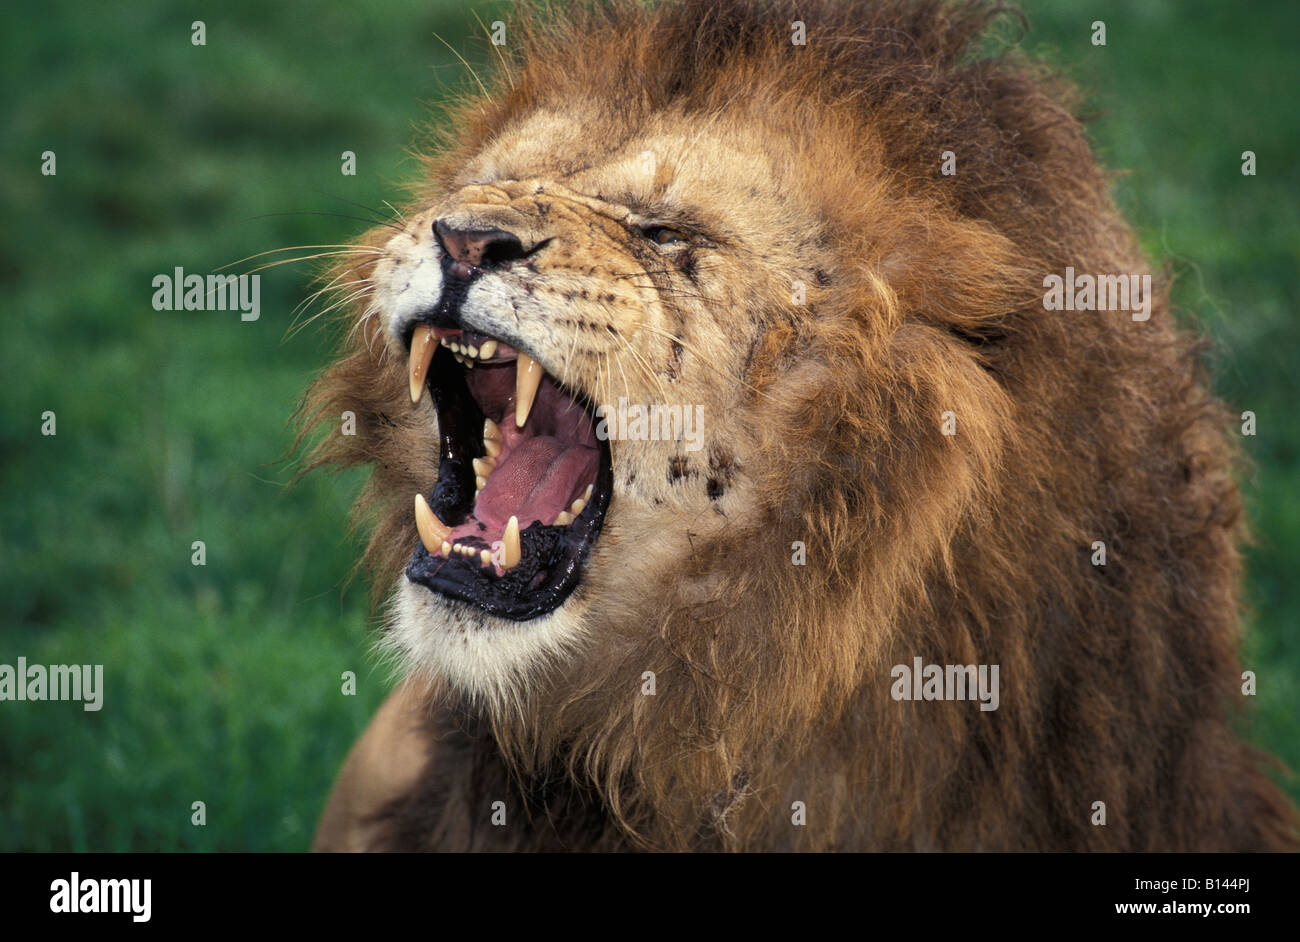 Roaring lion Panthera leo Parc National de Nairobi Kenya Afrique Afrique carnivore carnivores dangereux danger alarme expressi Banque D'Images